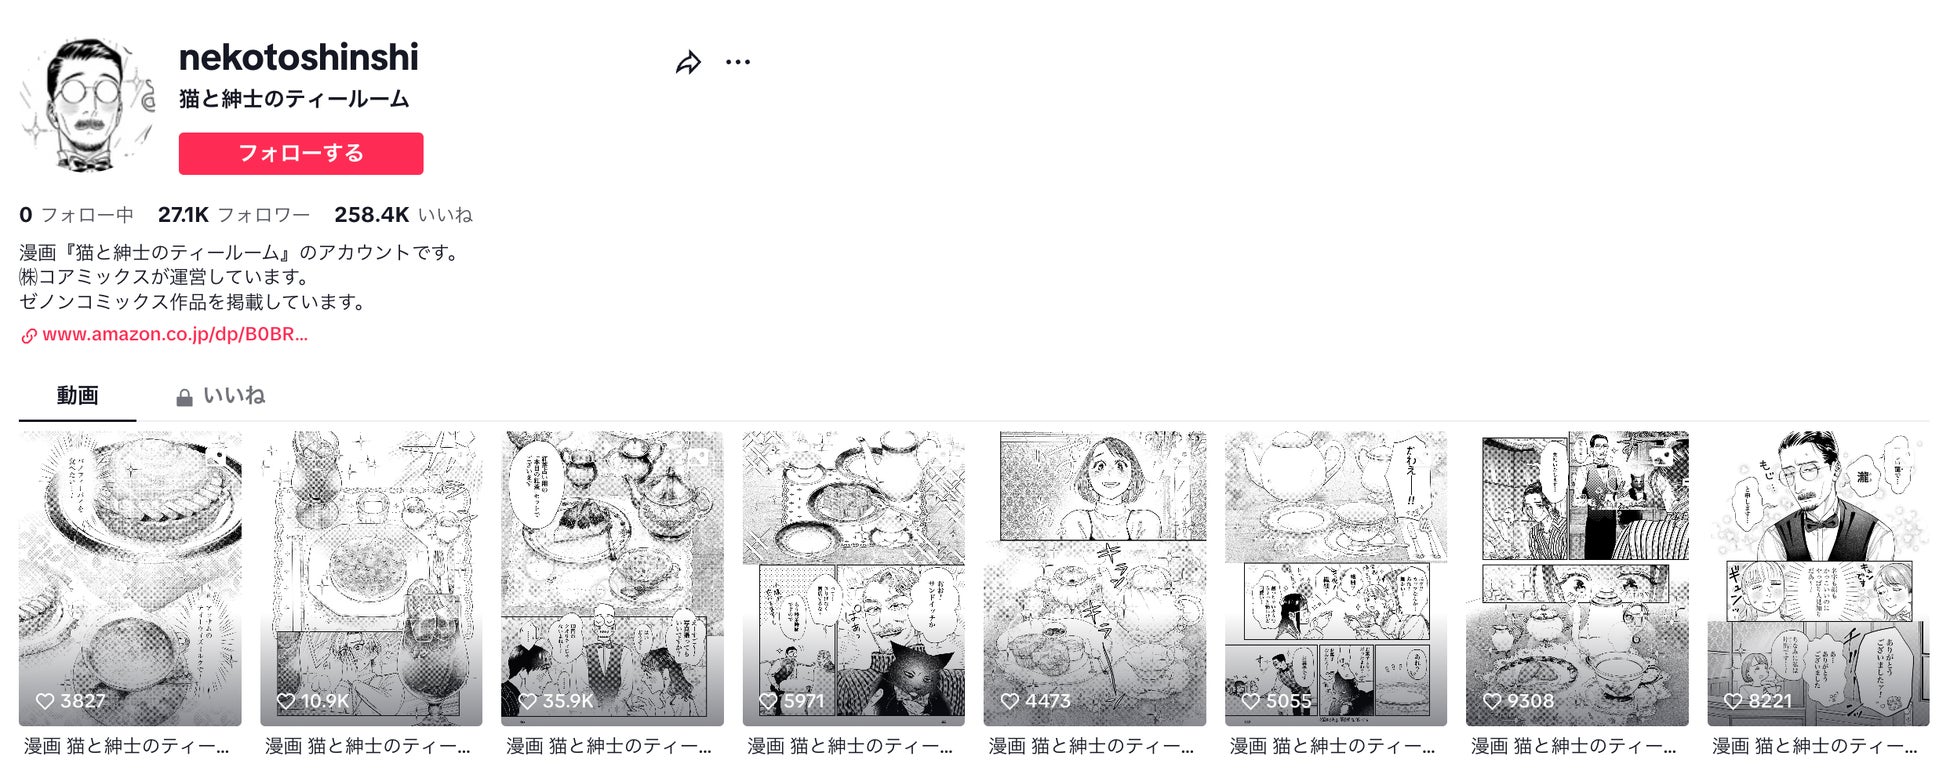 TikTok総再生回数200万回超え!! 猫とイケオジが営む喫茶店マンガ『猫と紳士のティールーム』が話題!!